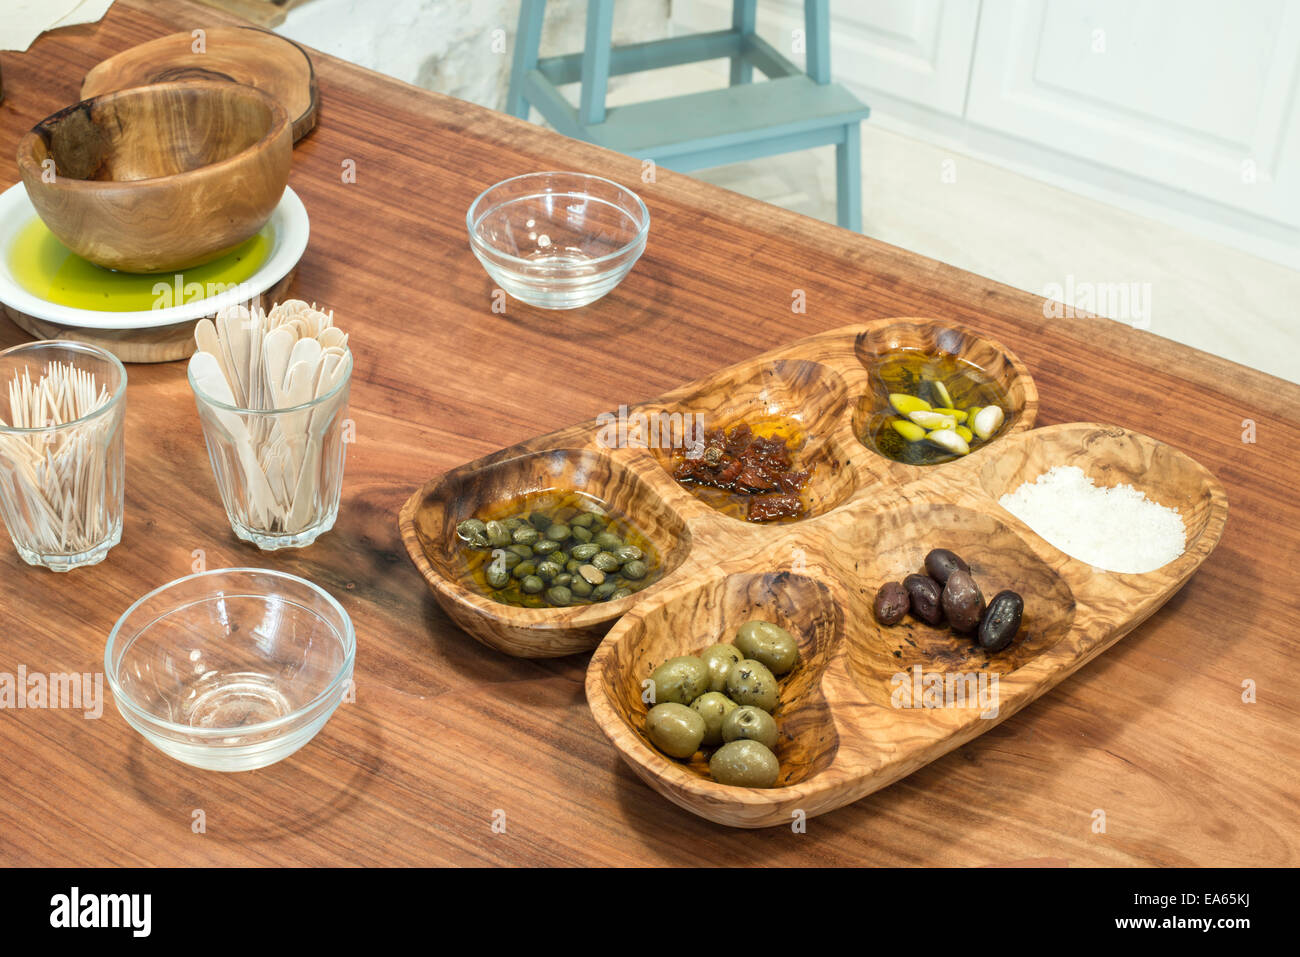 Les olives dans un bol en bois pour dégustation Banque D'Images